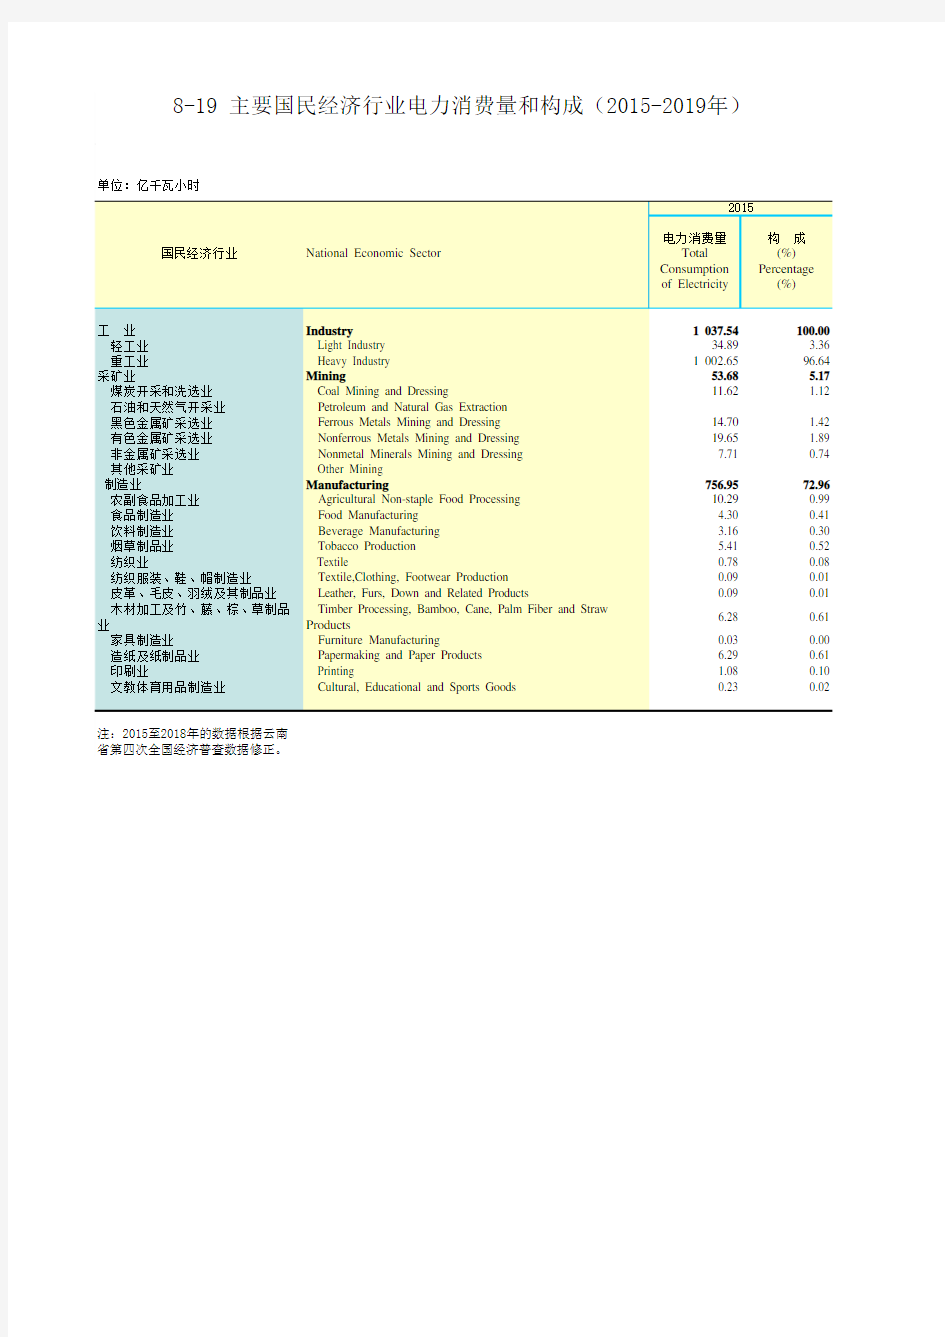 云南统计年鉴2020社会经济发展指标：国民经济行业电力消费量和构成(2015-2019年)